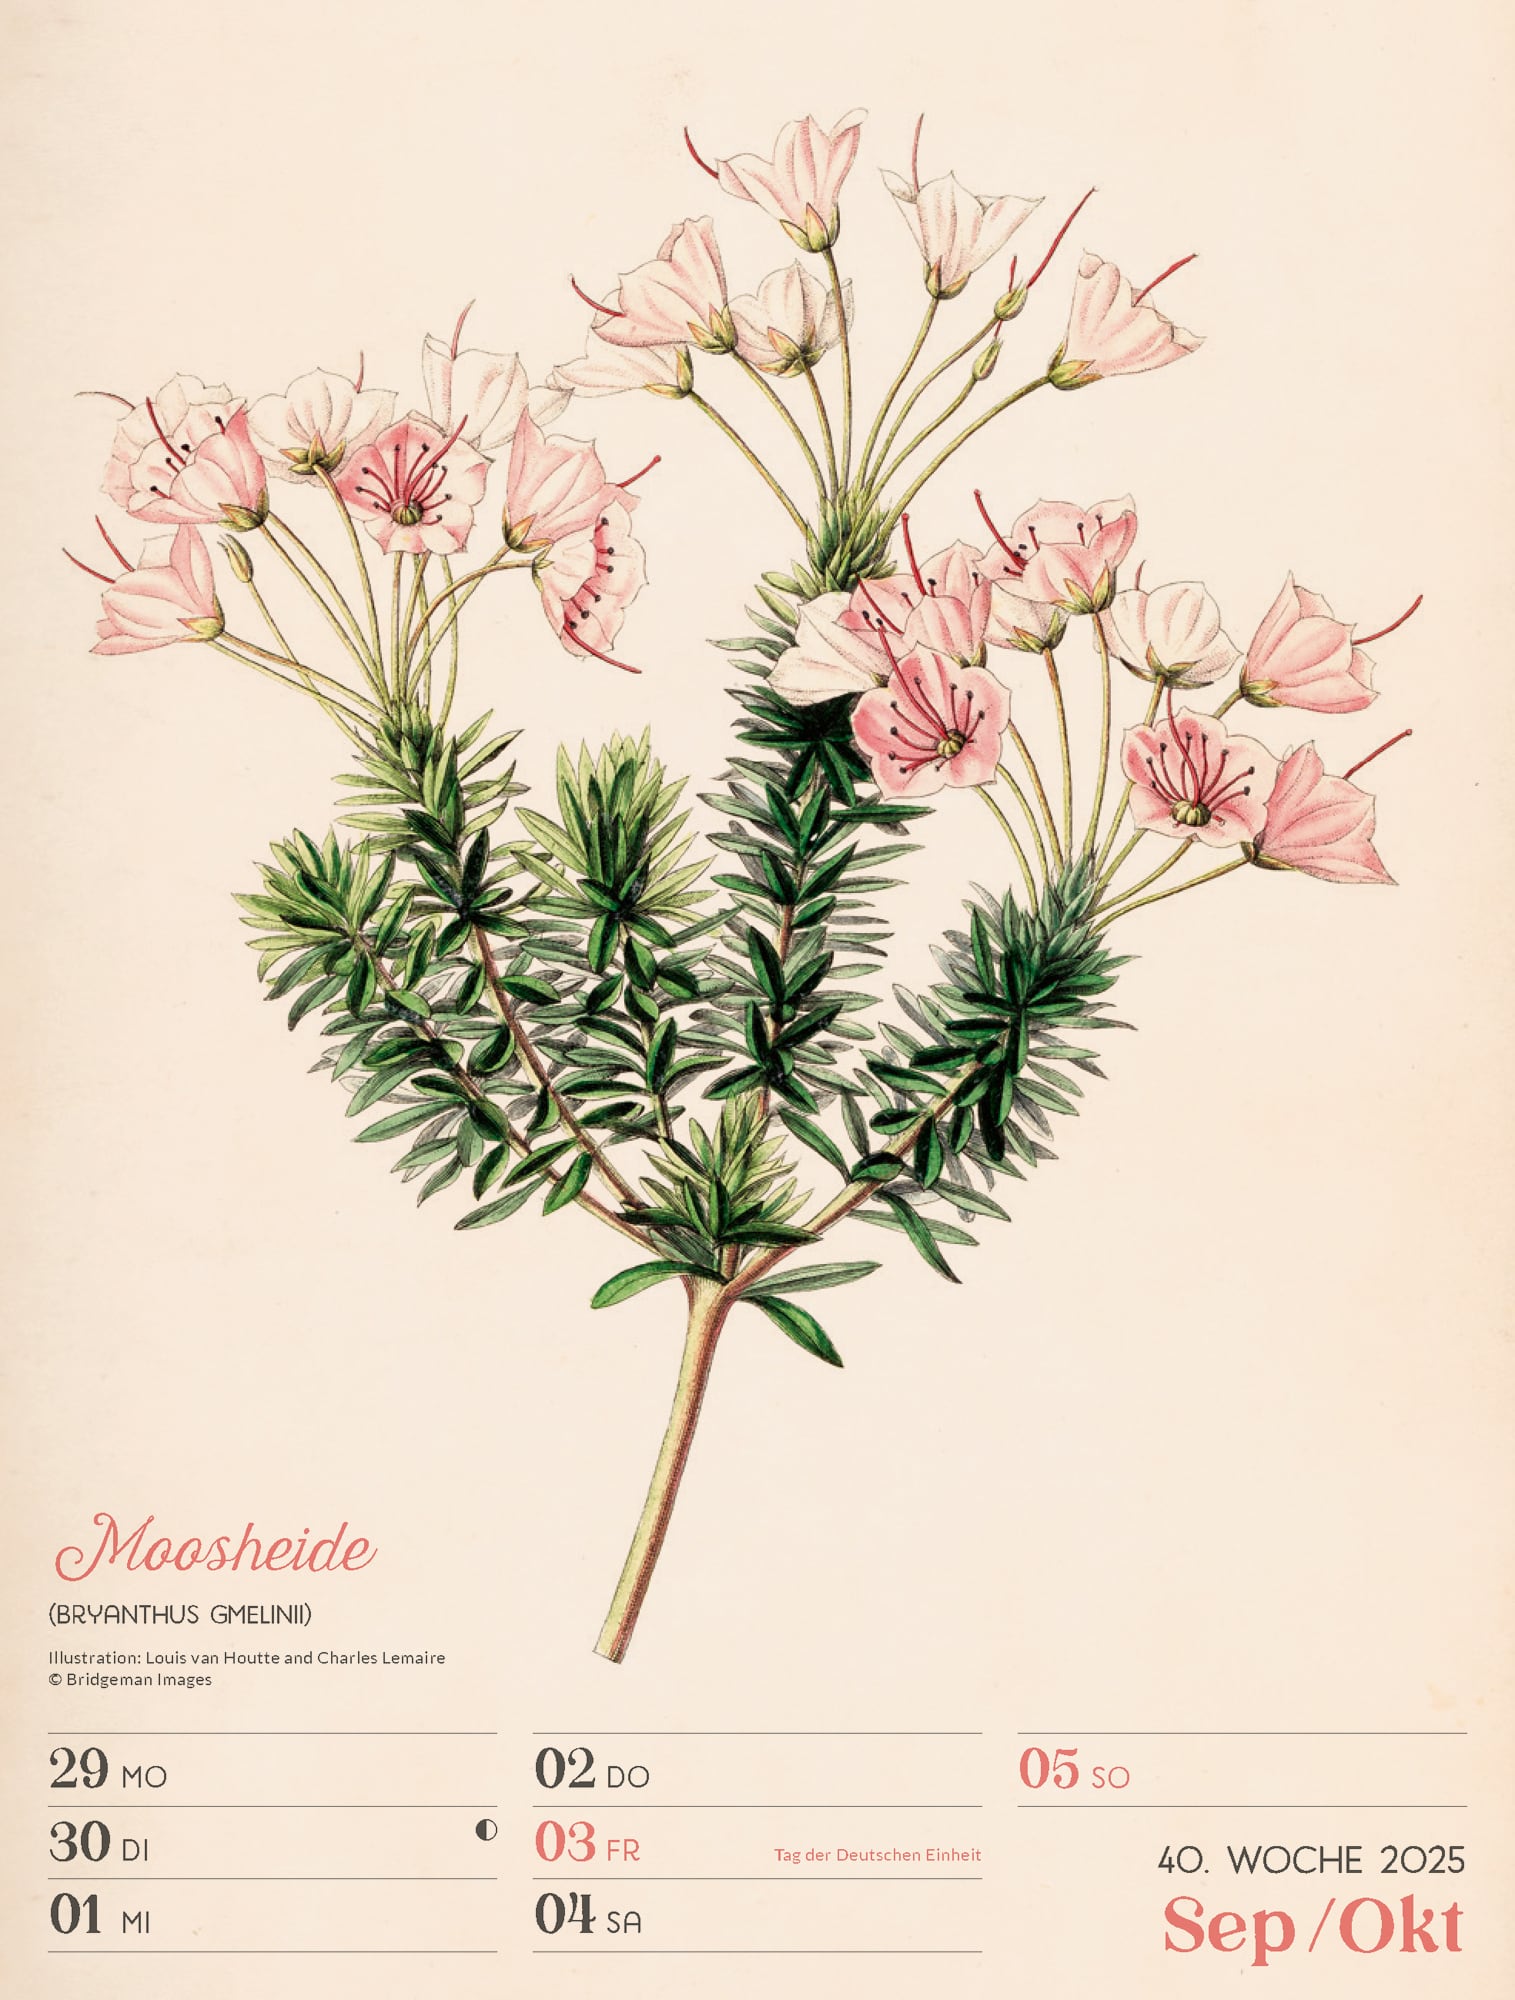 Ackermann Calendar Ars Floralis 2025 - Weekly Planner - Inside View 43